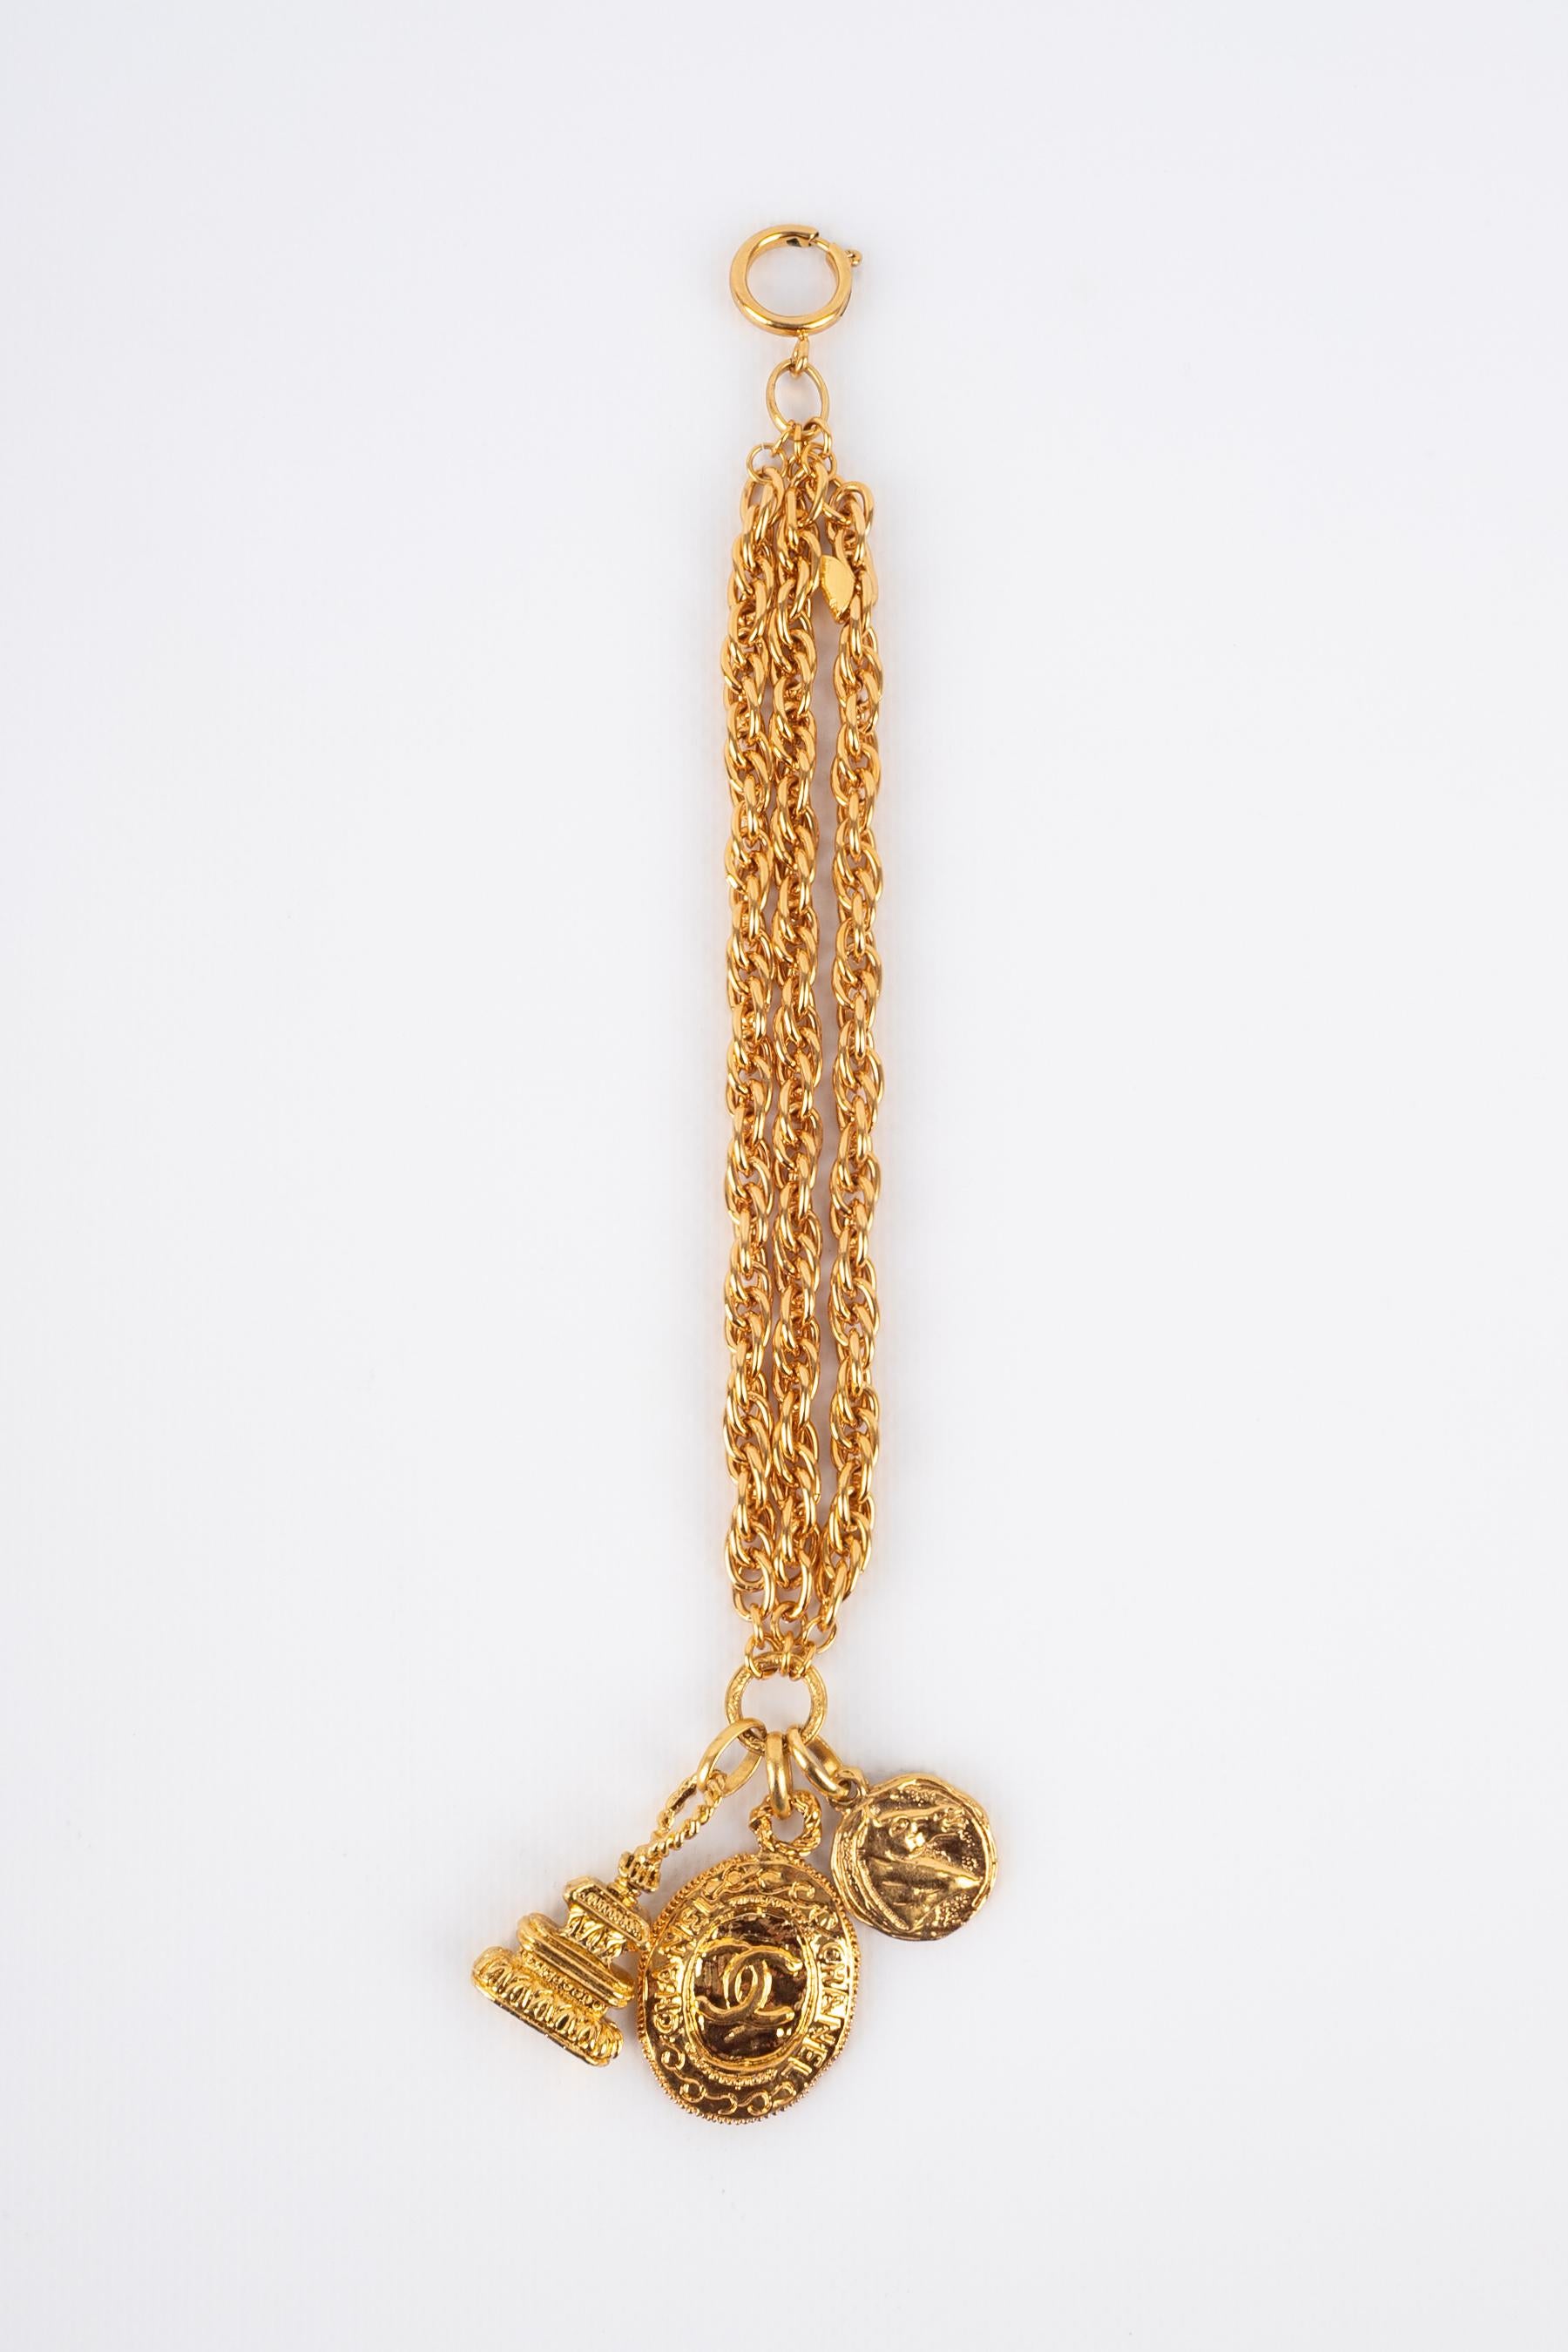 CHANEL - (Made in France) Goldenes Siegelarmband aus Metall.

Bedingung:
Sehr guter Zustand

Abmessungen:
Länge: 19 cm

BRAB19